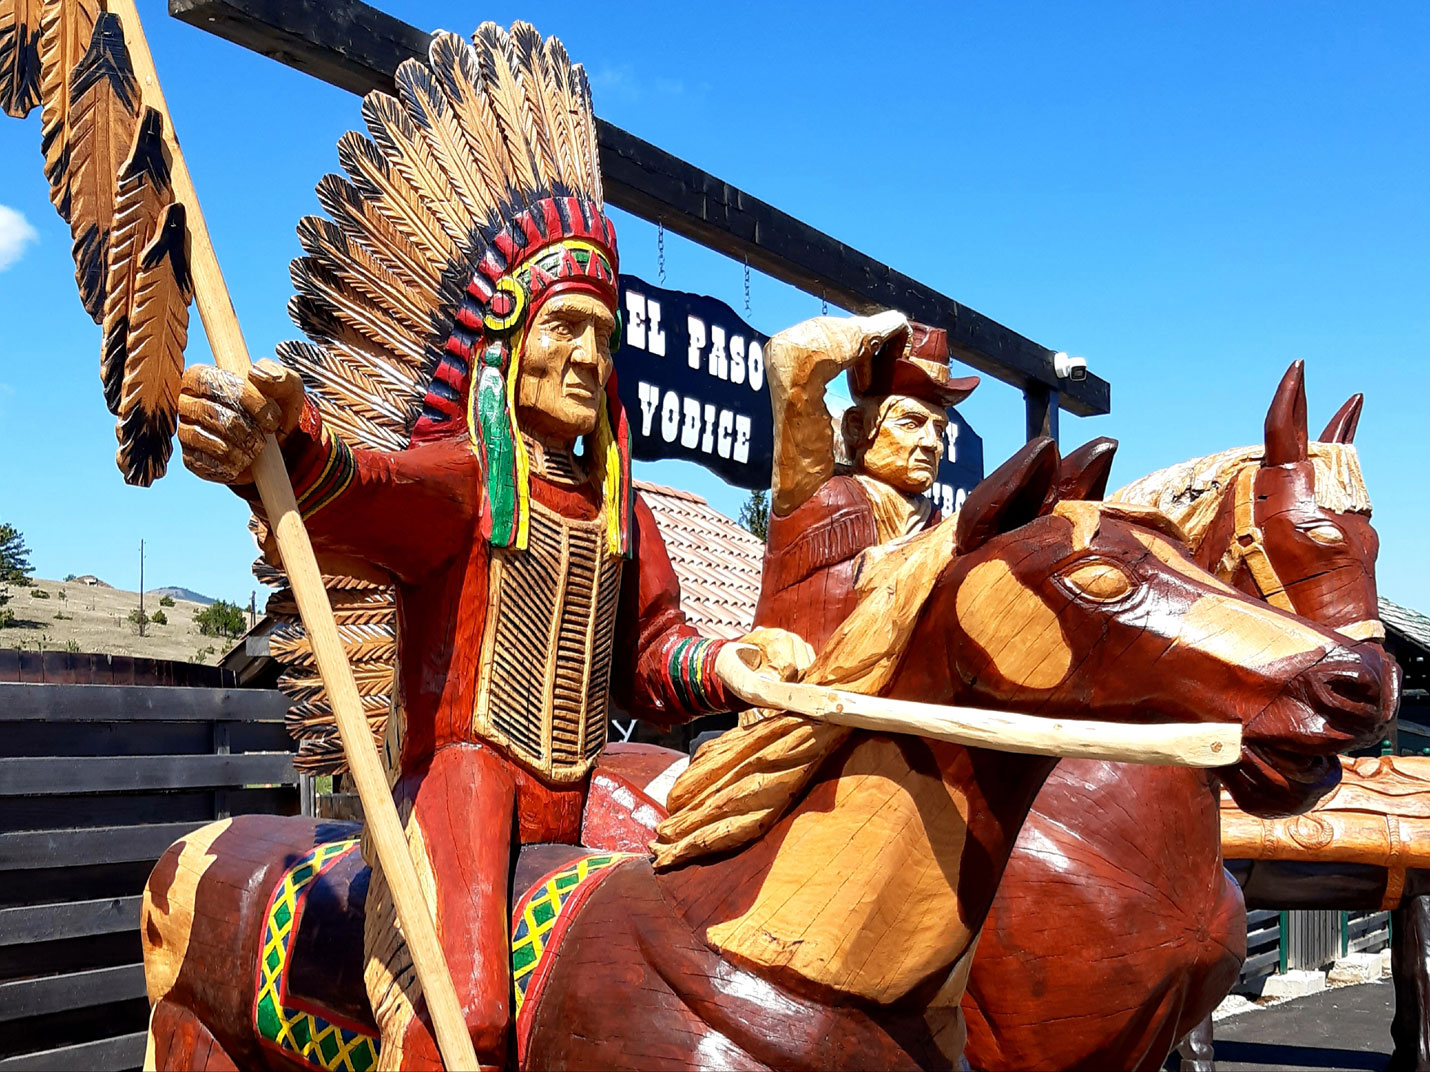 Kaubojski grad, indijansko selo i zlatiborski zaselak su tri celine koje sačinjavaju tematski park El Paso City Zlatibor u kojem možete osetiti atmosferu 19.veka u istom vremenskom periodu ali na dva različita kraja sveta!